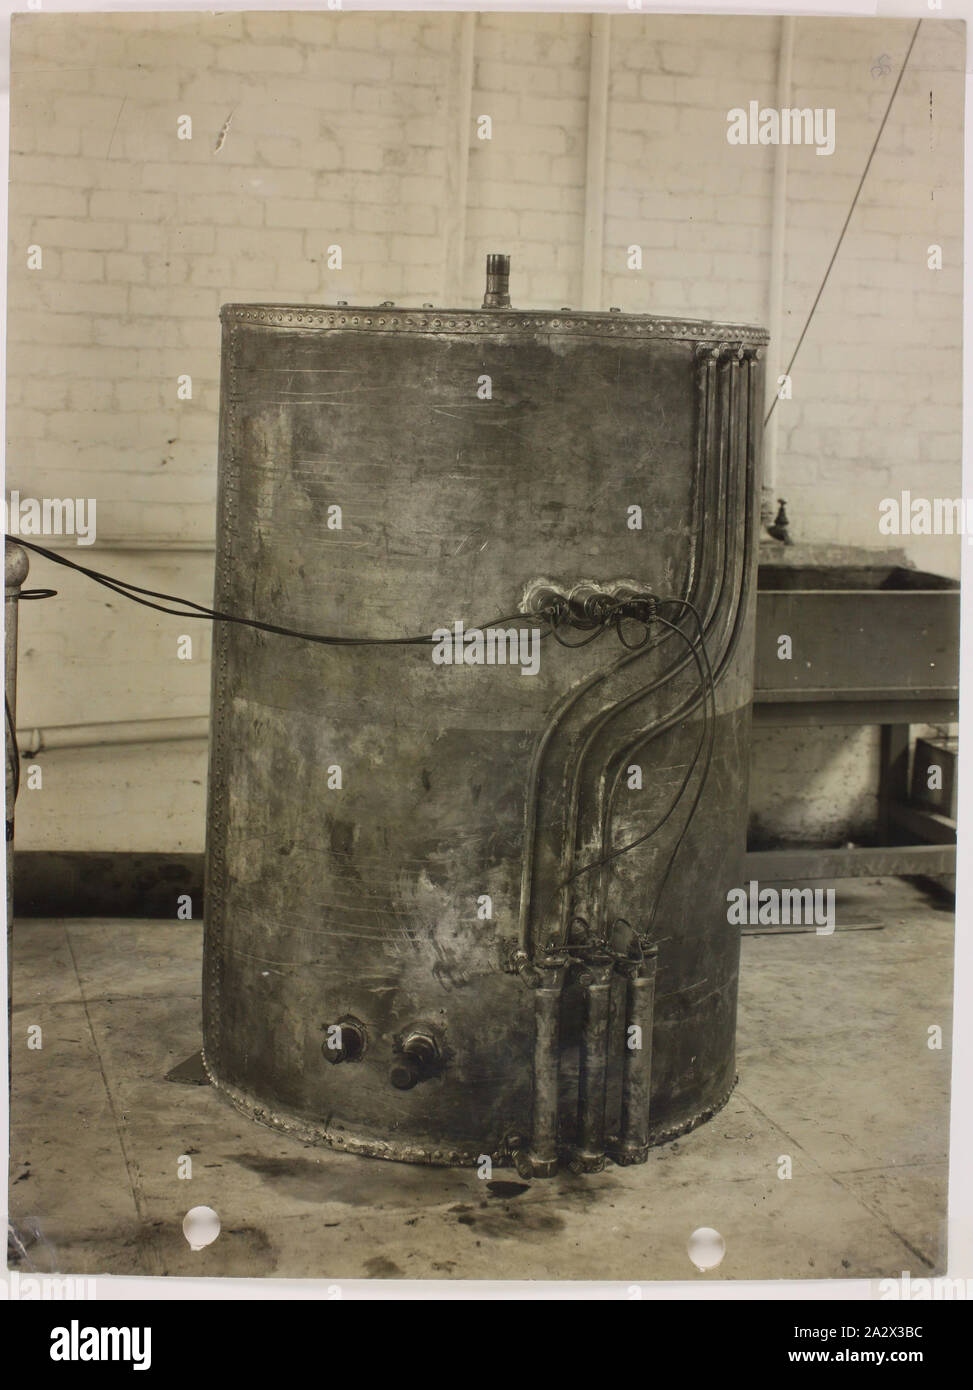 Fotografia - Hecla Electrics Pty Ltd, scaldabagno, circa 1940, fotografia  in bianco e nero di uno scaldabagno elettrico, eventualmente un cilindro di  acqua, prodotta da Hecla Electrics, a loro South Yarra fabbrica